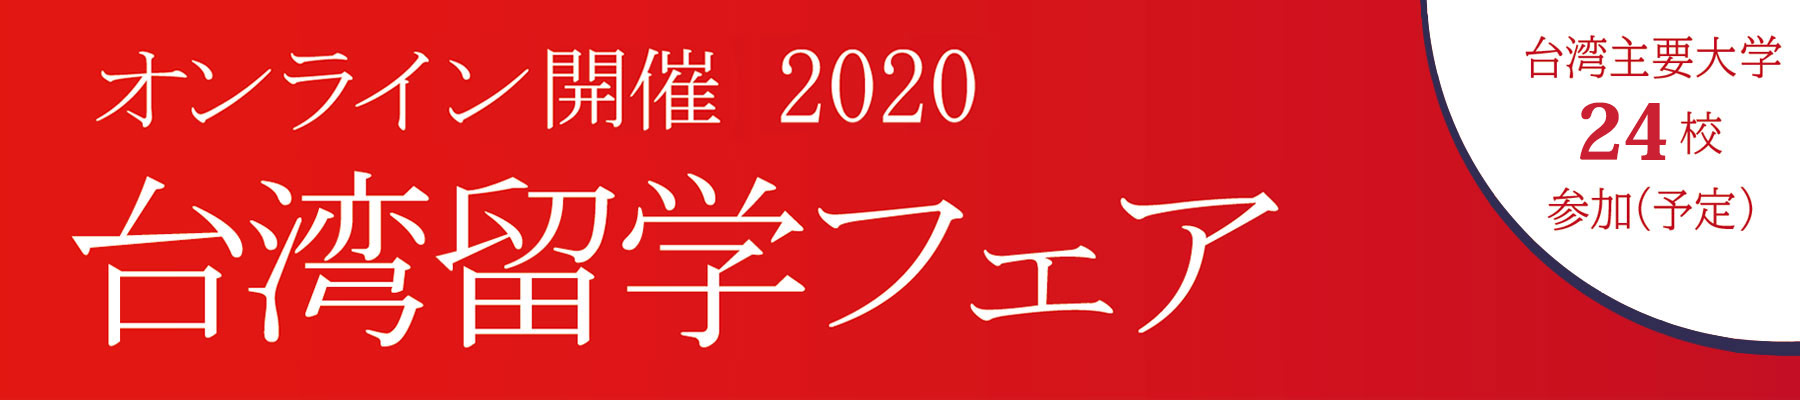 オンライン開催2020・台湾留学フェア